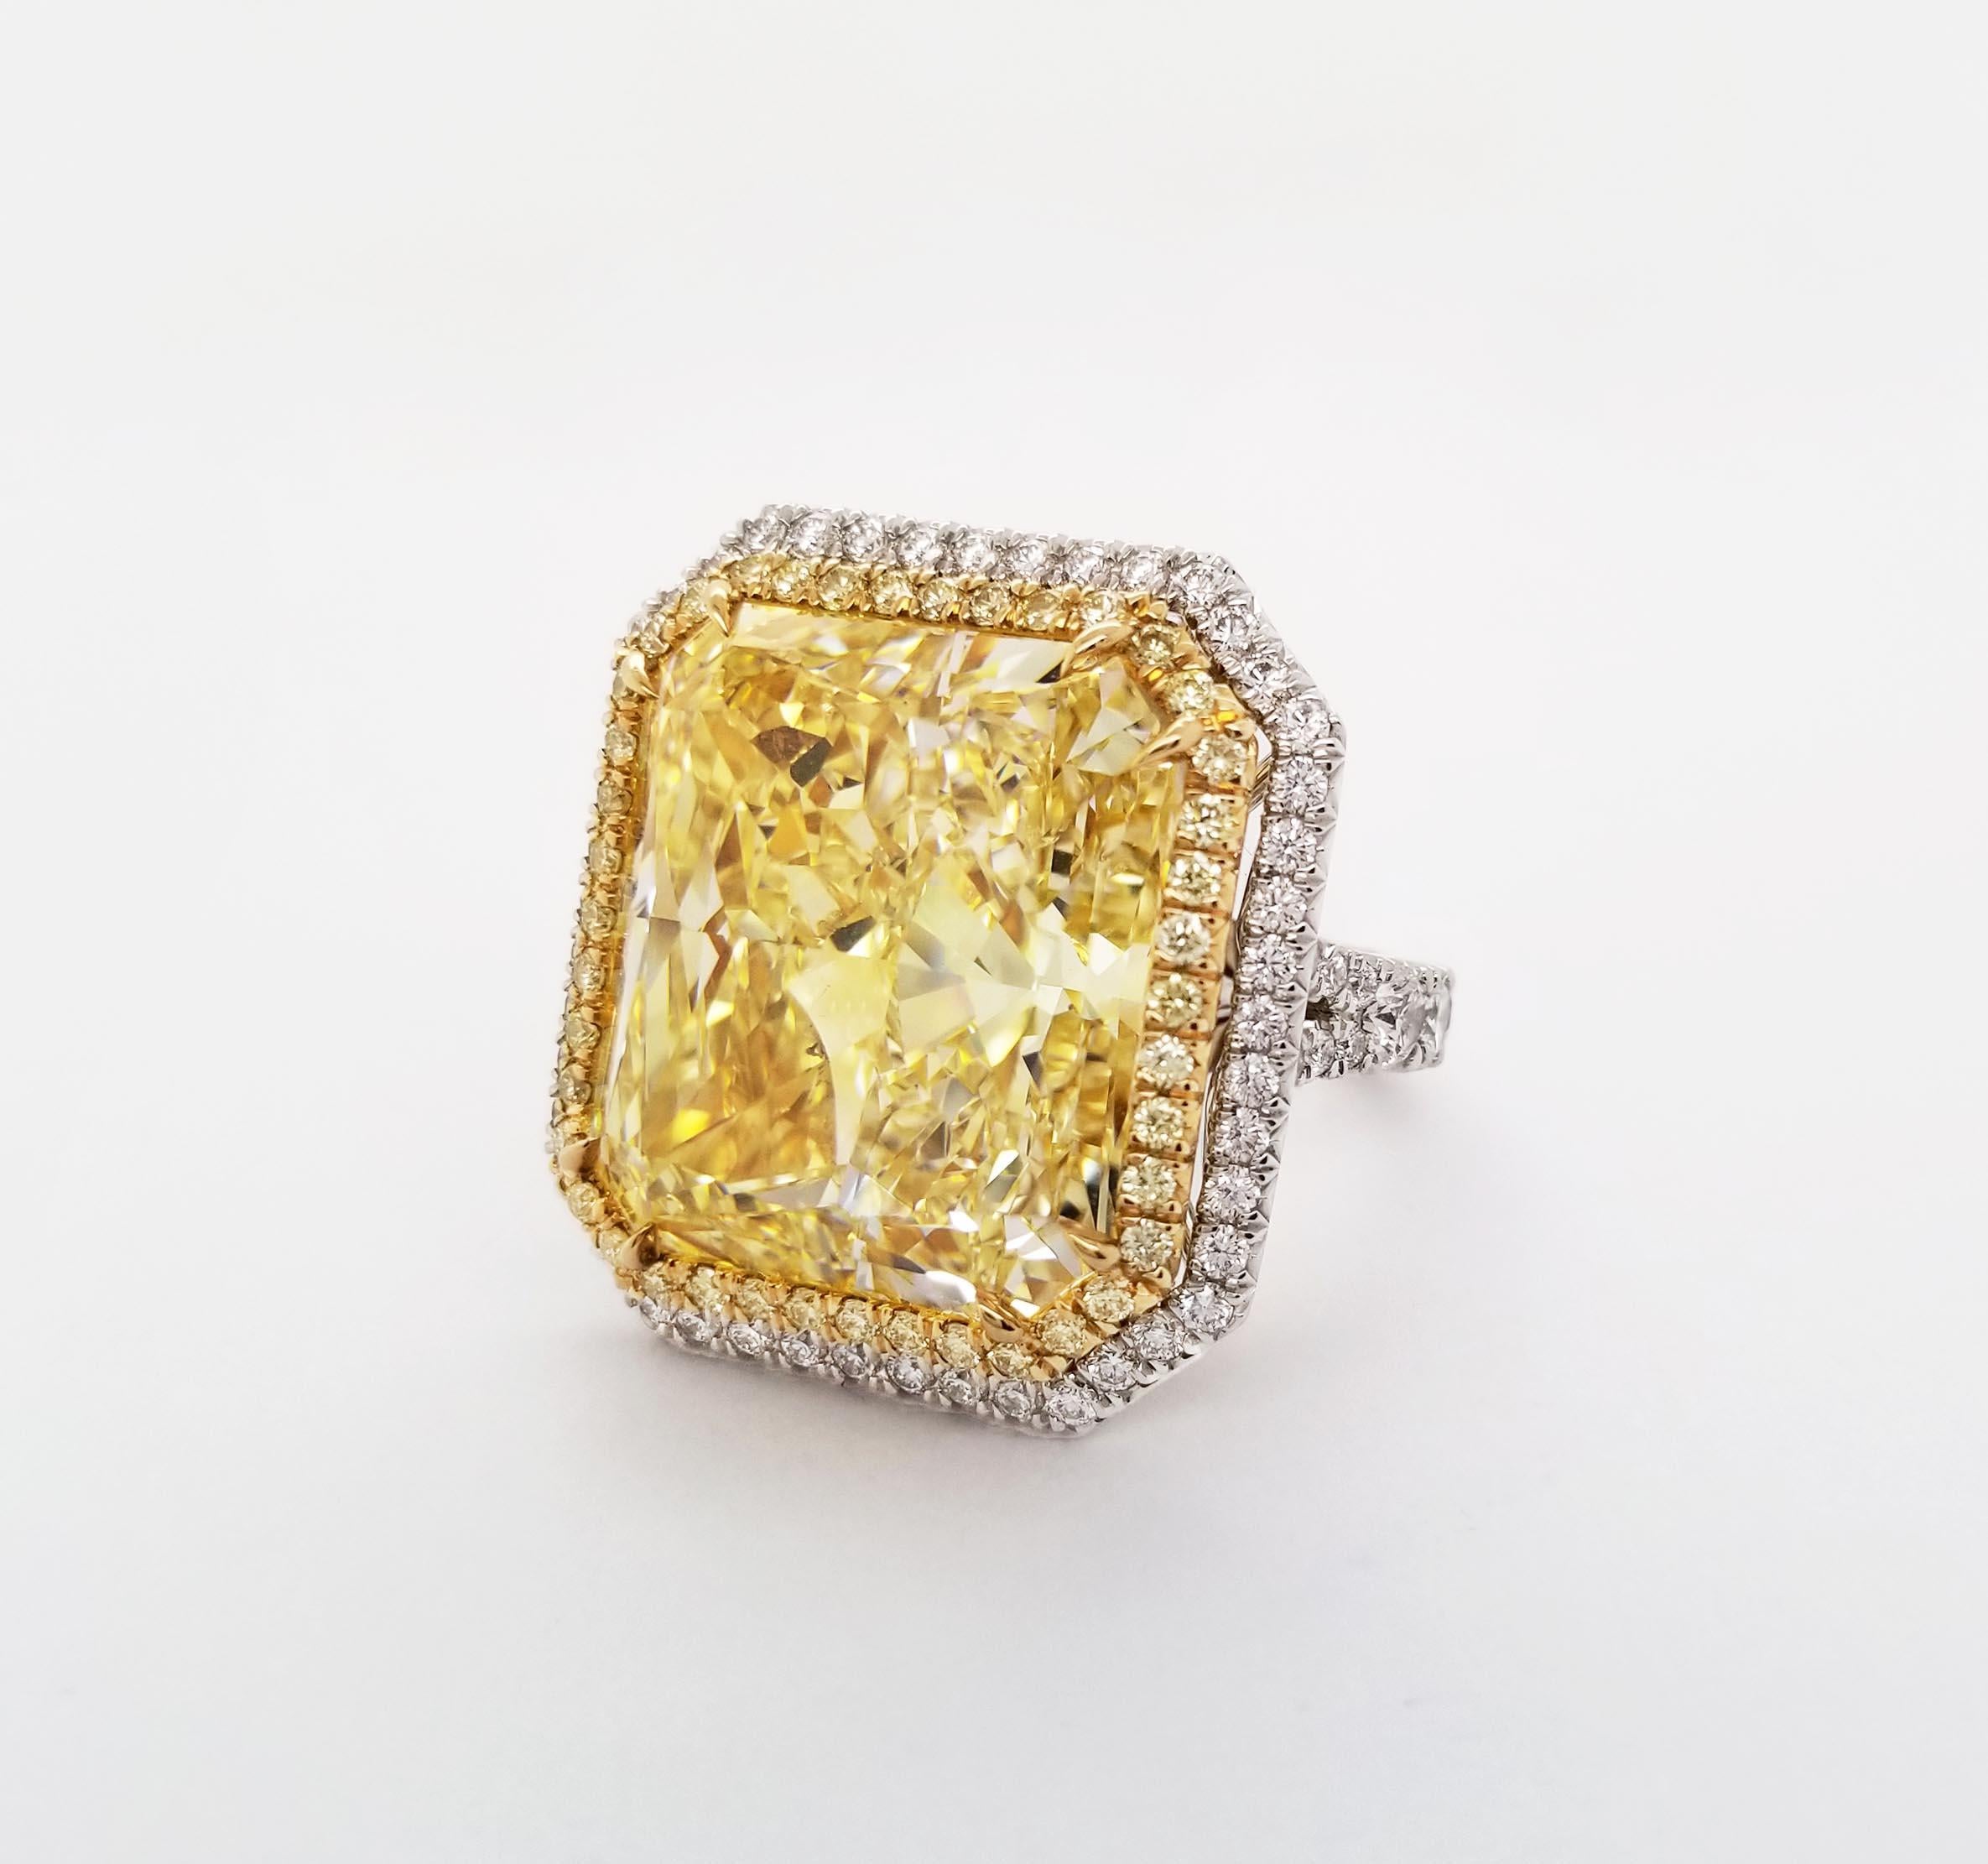 Von SCARSELLI, ein spektakulärer 24+ Karat Fancy Yellow Naturdiamant in einer handgefertigten Fassung aus 18 Karat Gold, die rundum perfekt in Platin gefasst ist (siehe Abbildung des Zertifikats für detaillierte Informationen über den Stein). Der